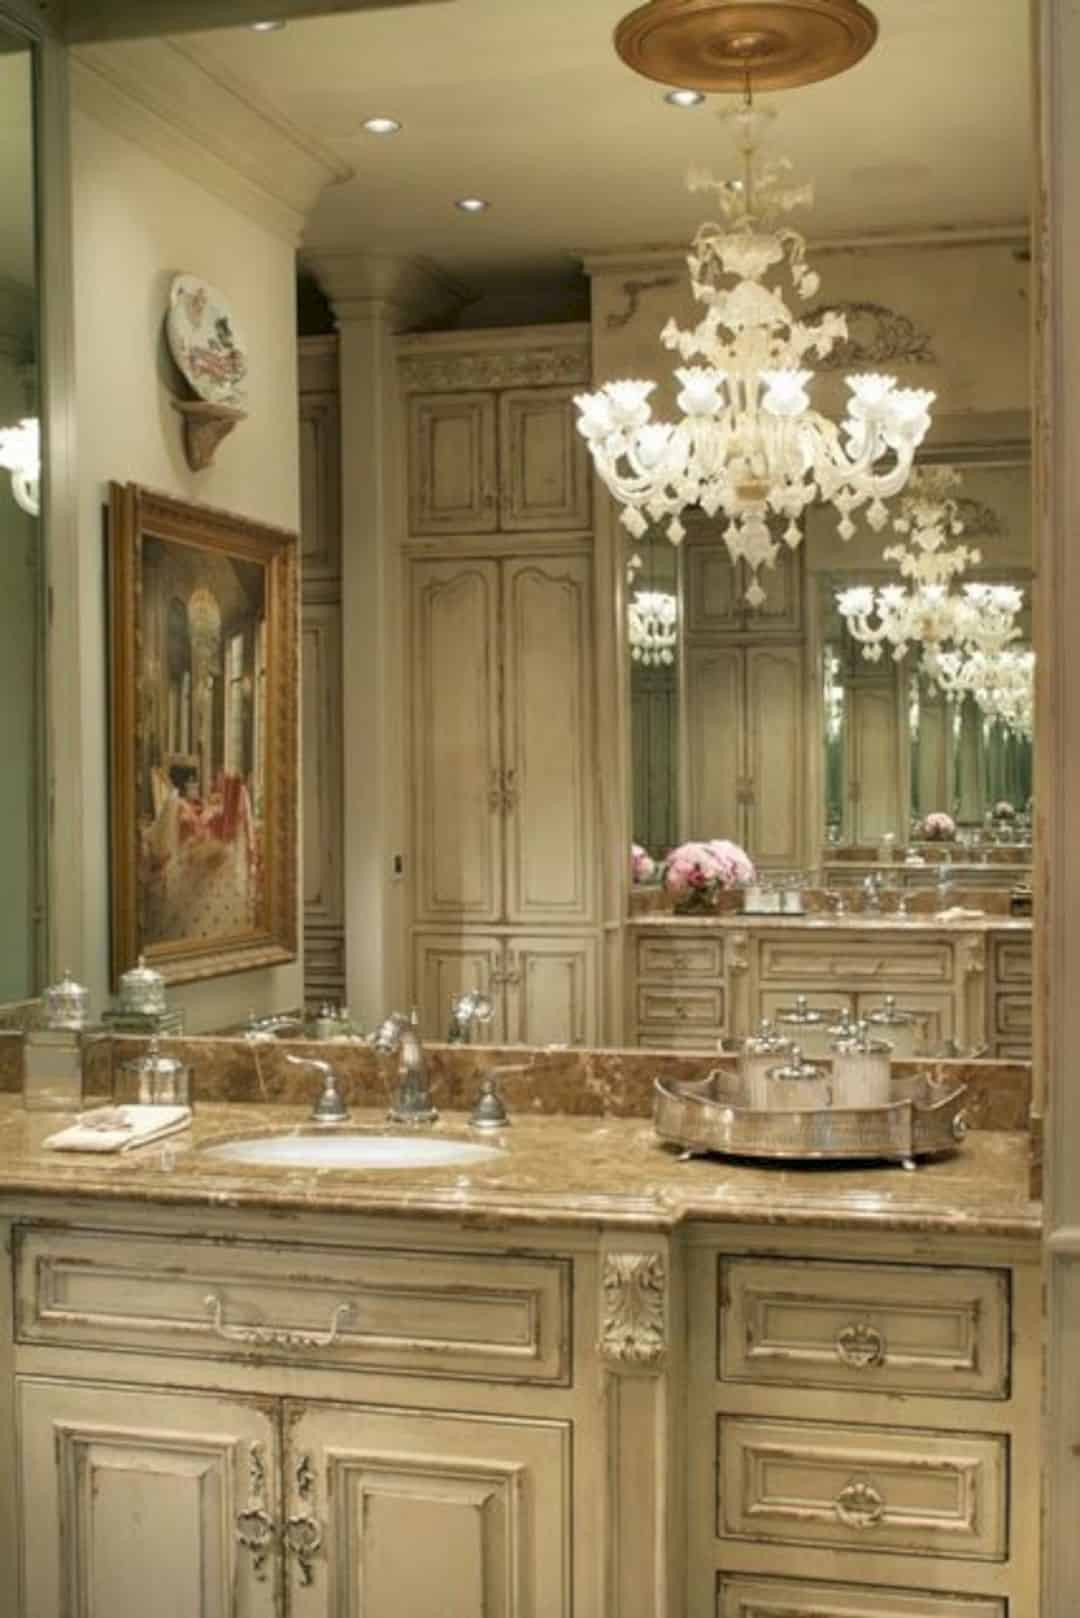 Elegant Bathroom Designs
 